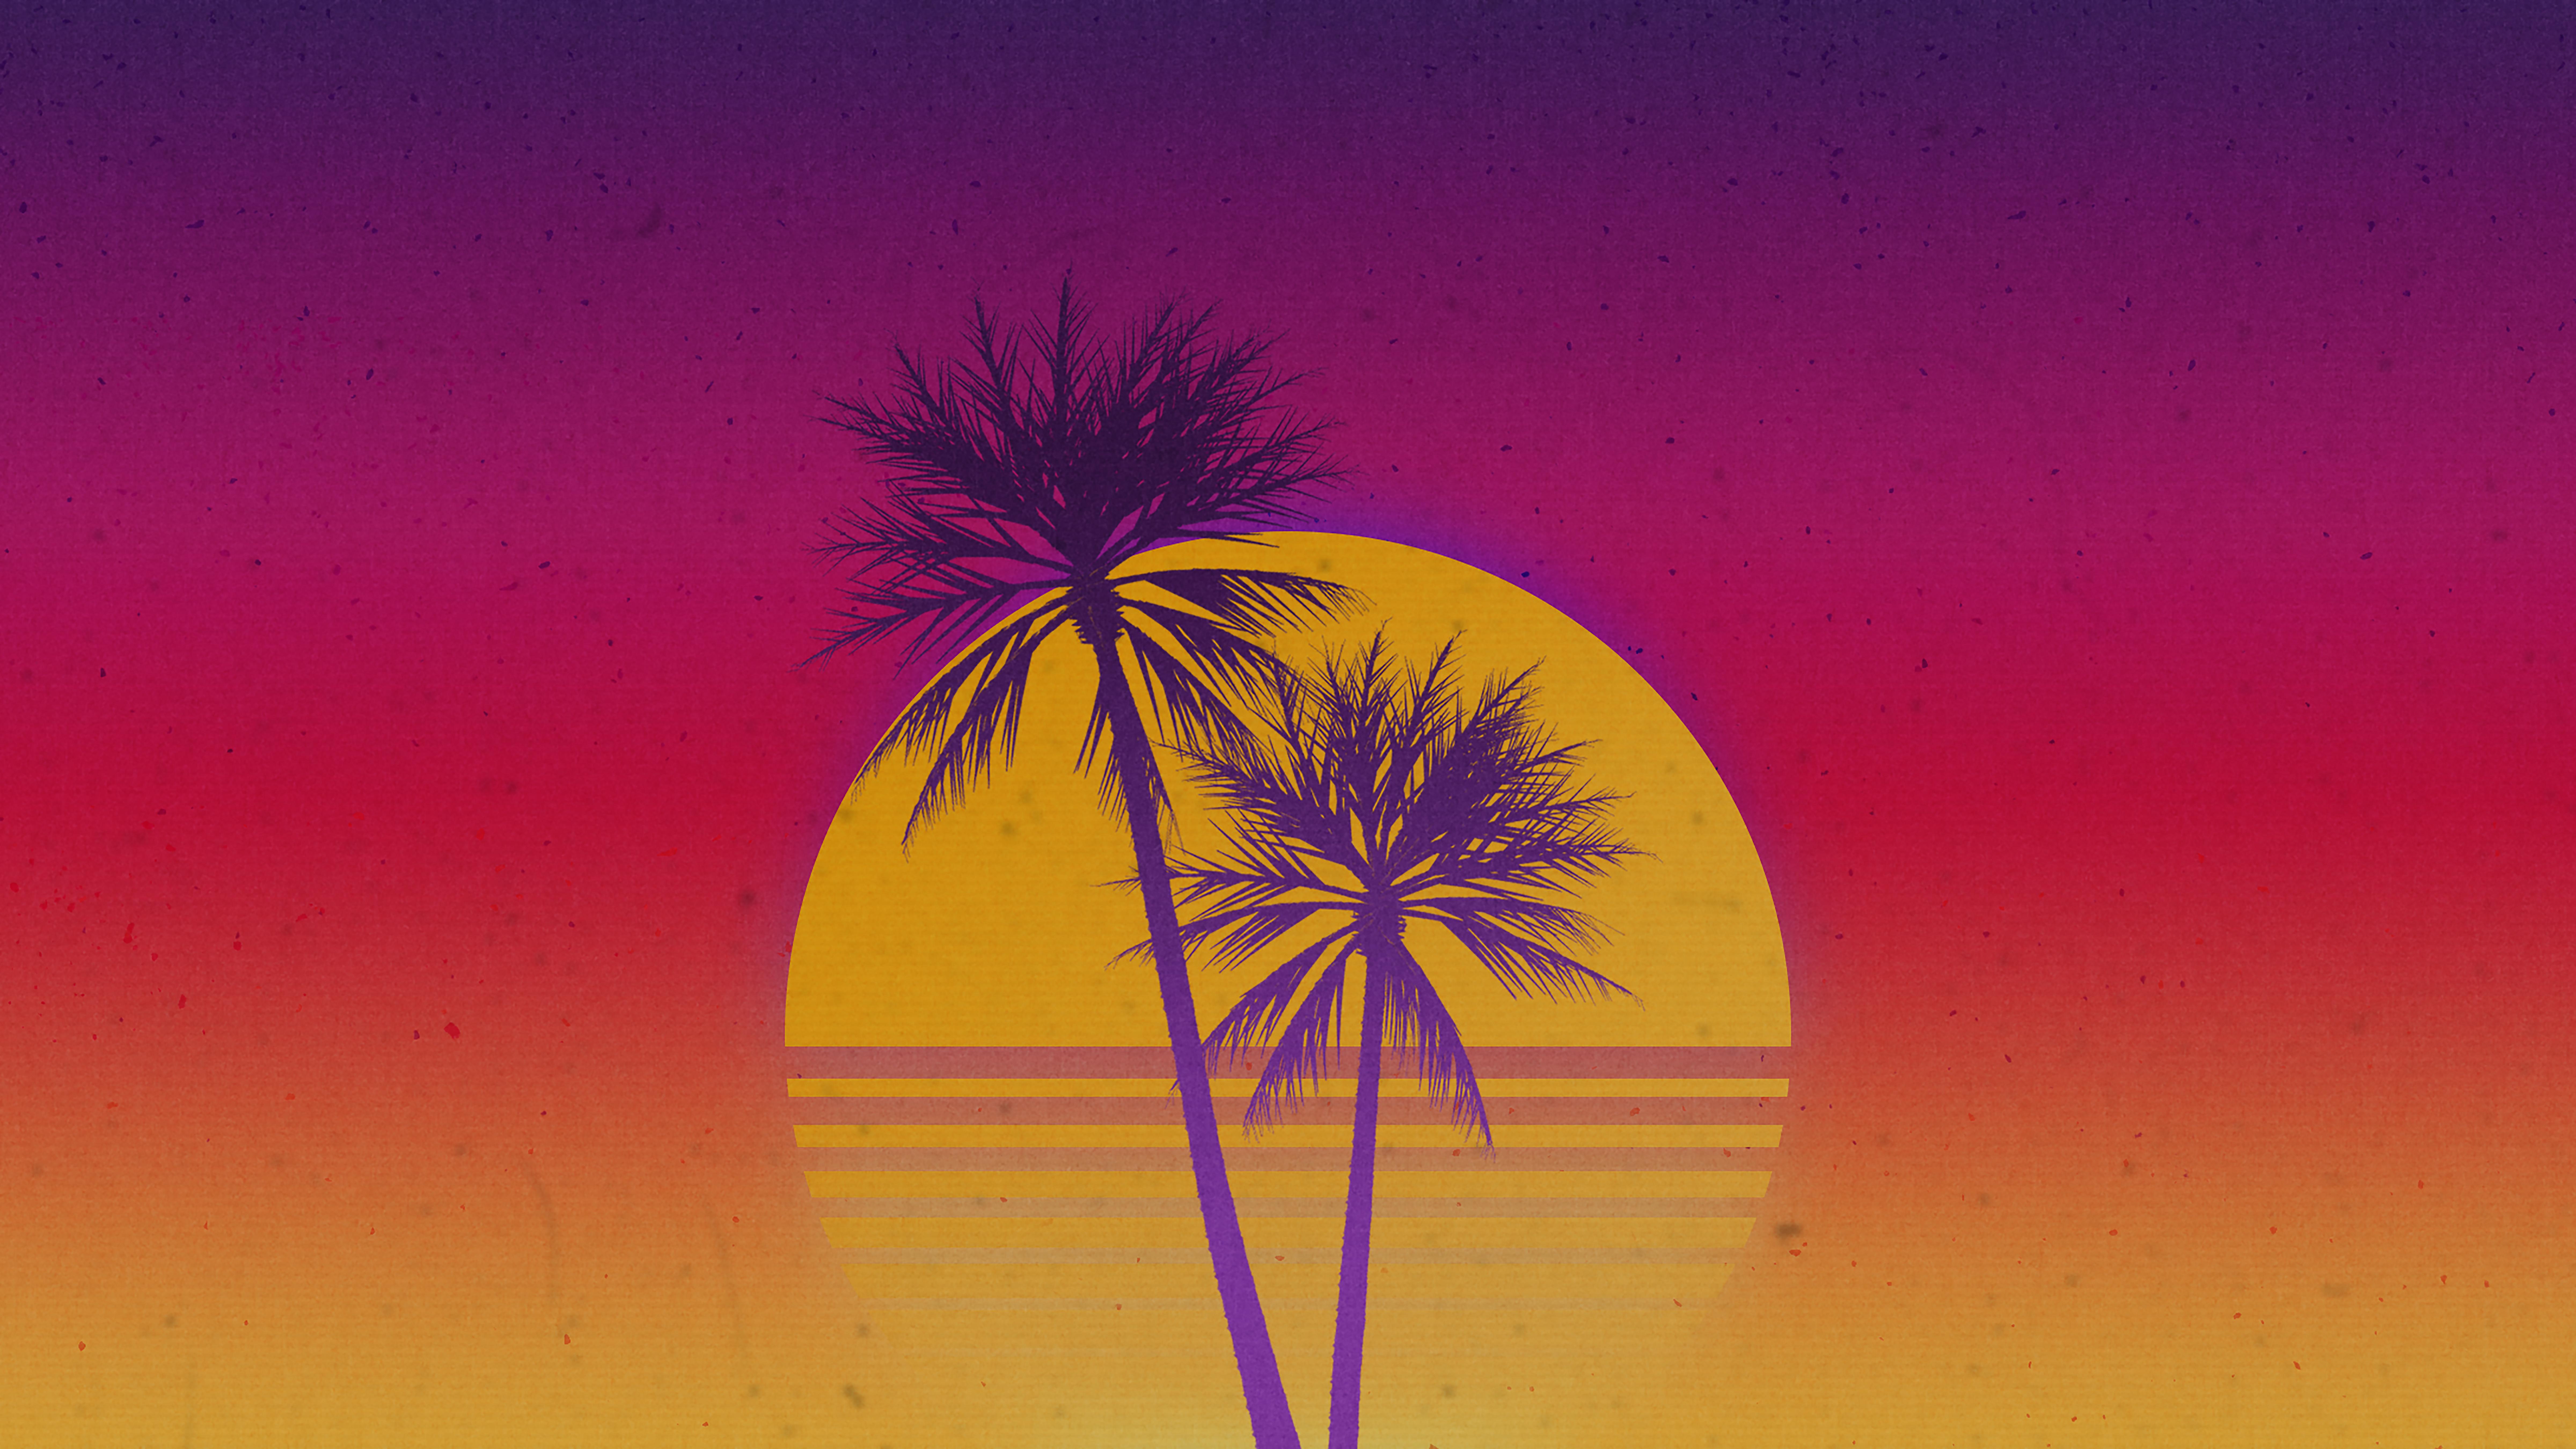 Neon Sunset Art - Album on Imgur